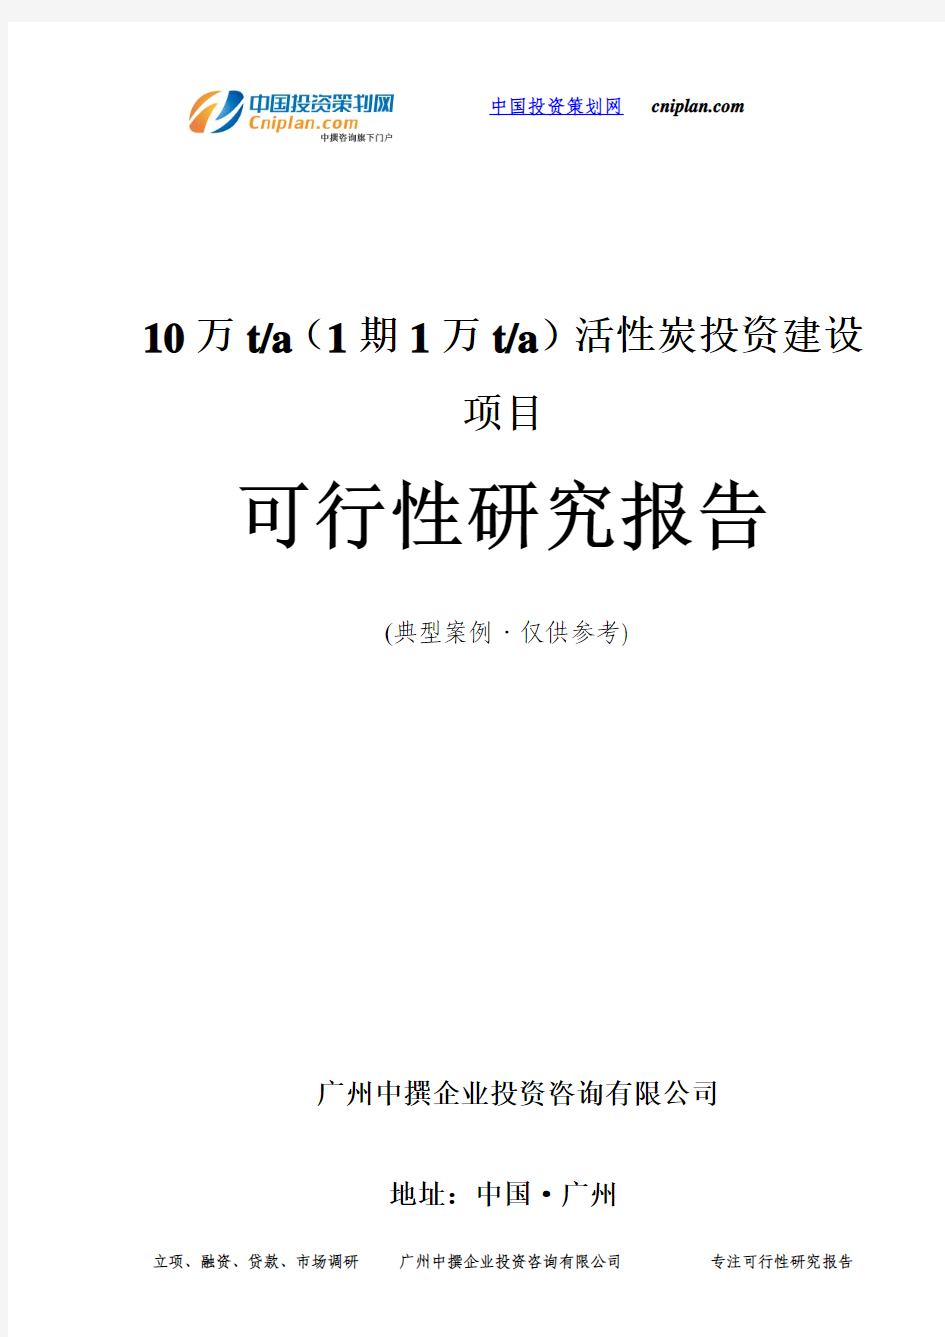 10万t a(1期1万t a)活性炭投资建设项目可行性研究报告-广州中撰咨询